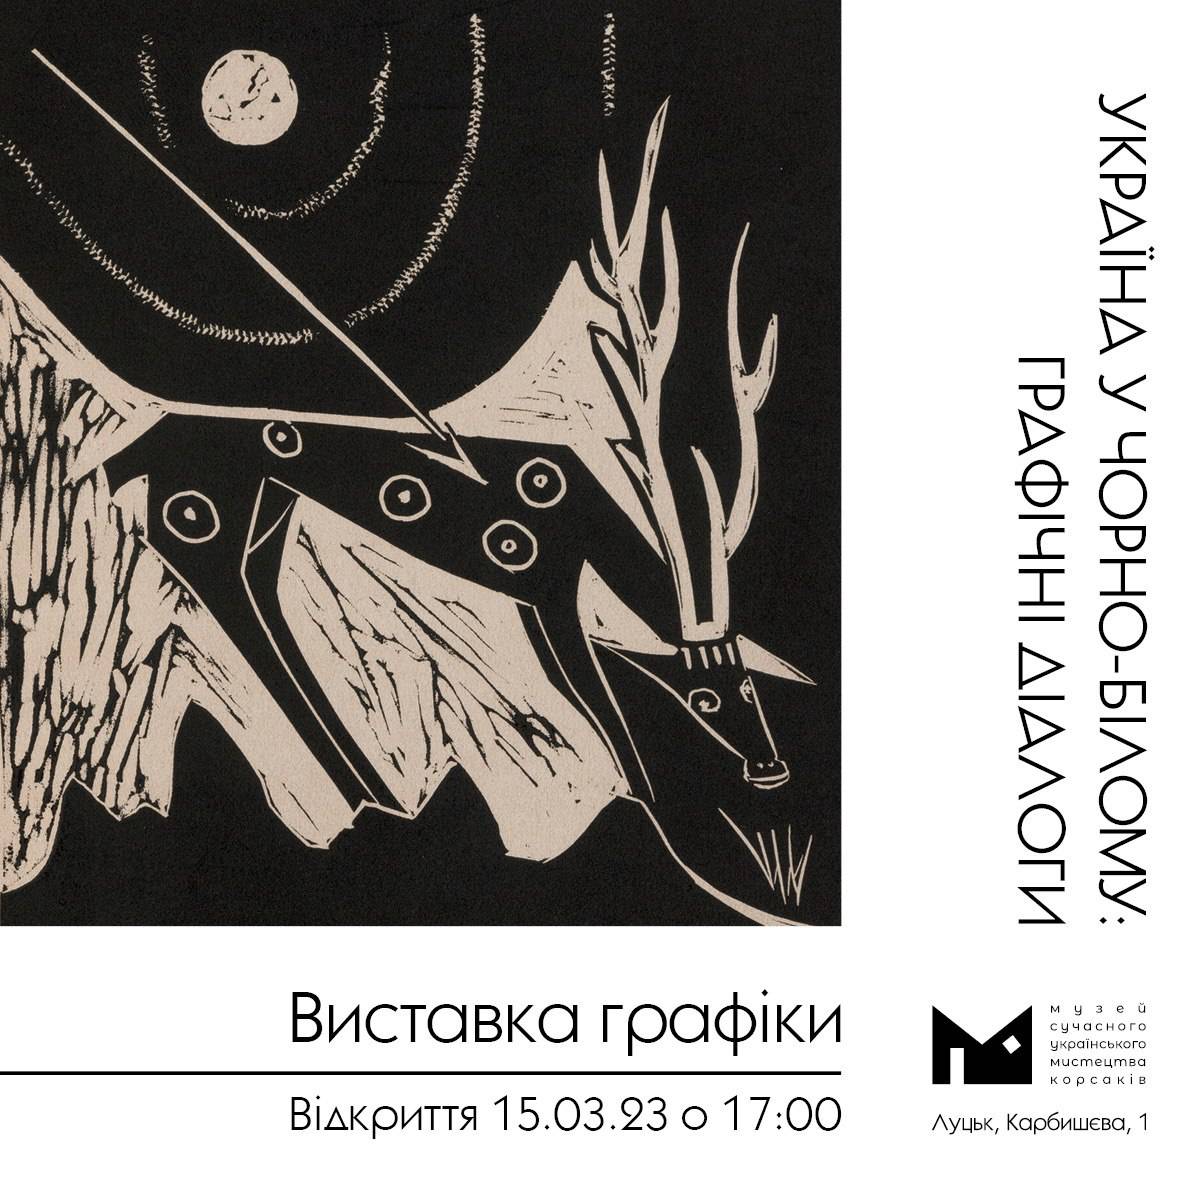 5 березня о 17:00 в Музеї Корсаків відбудеться відкриття виставки графіки «УКРАЇНА У ЧОРНО-БІЛОМУ: ГРАФІЧНІ ДІАЛОГИ»!